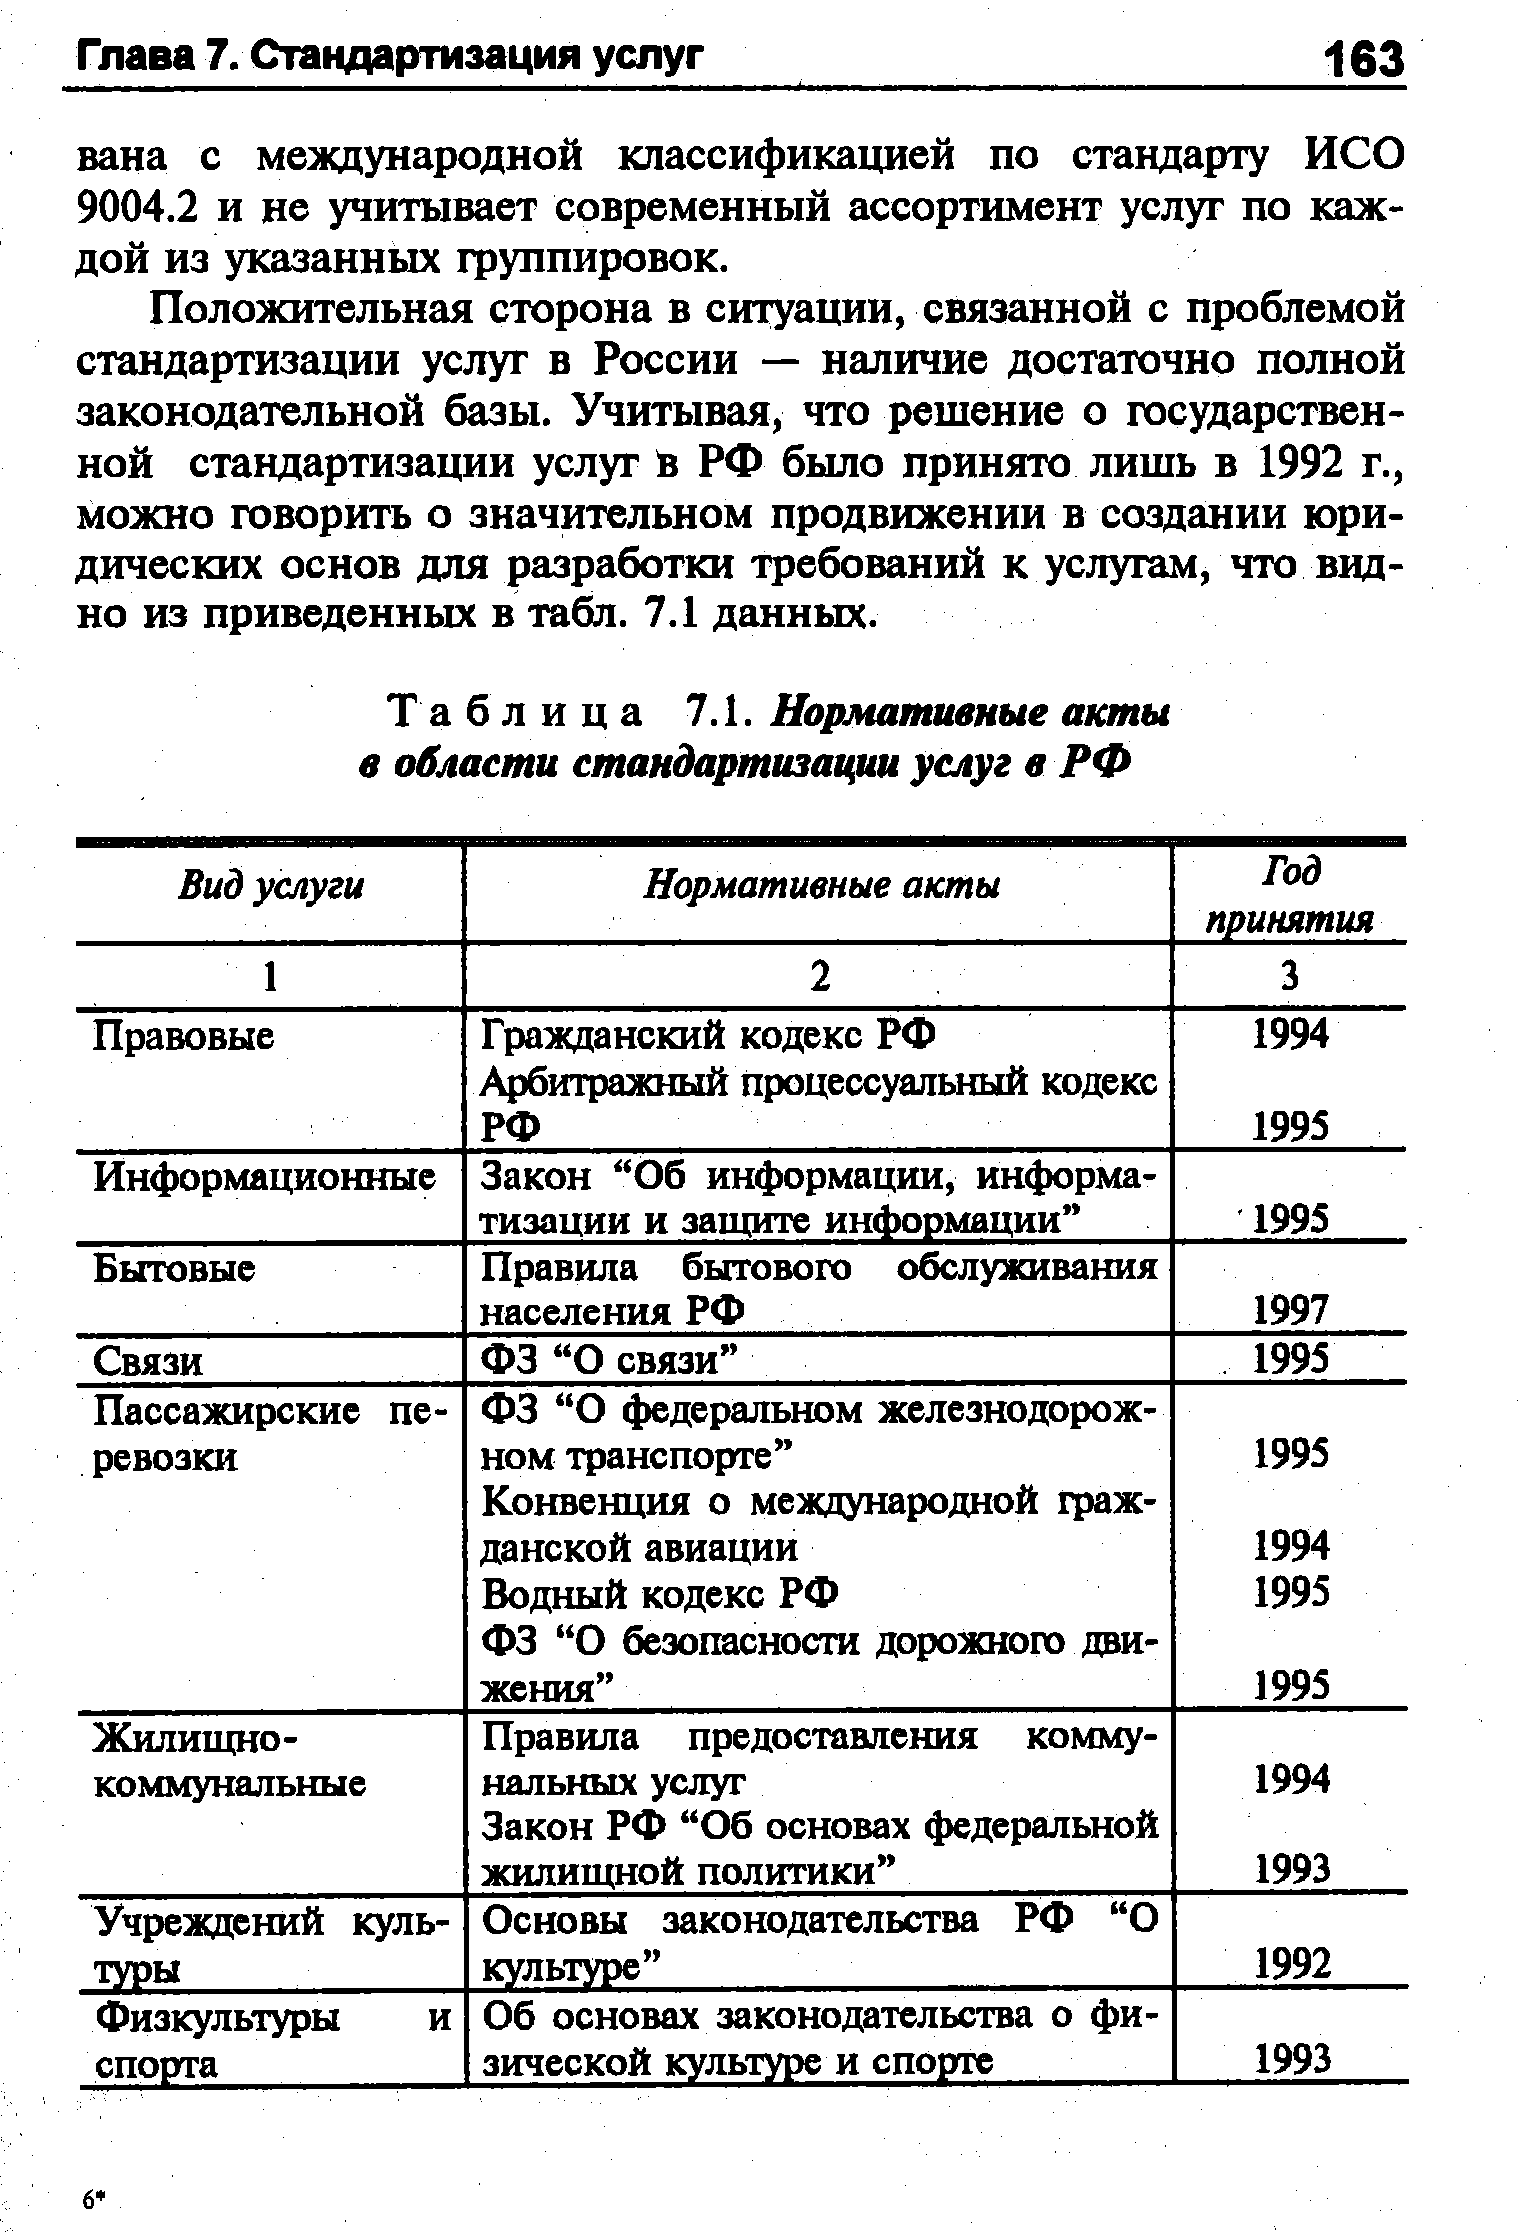 Таблица 7.1. Нормативные акты в области стандартизации услуг в РФ
